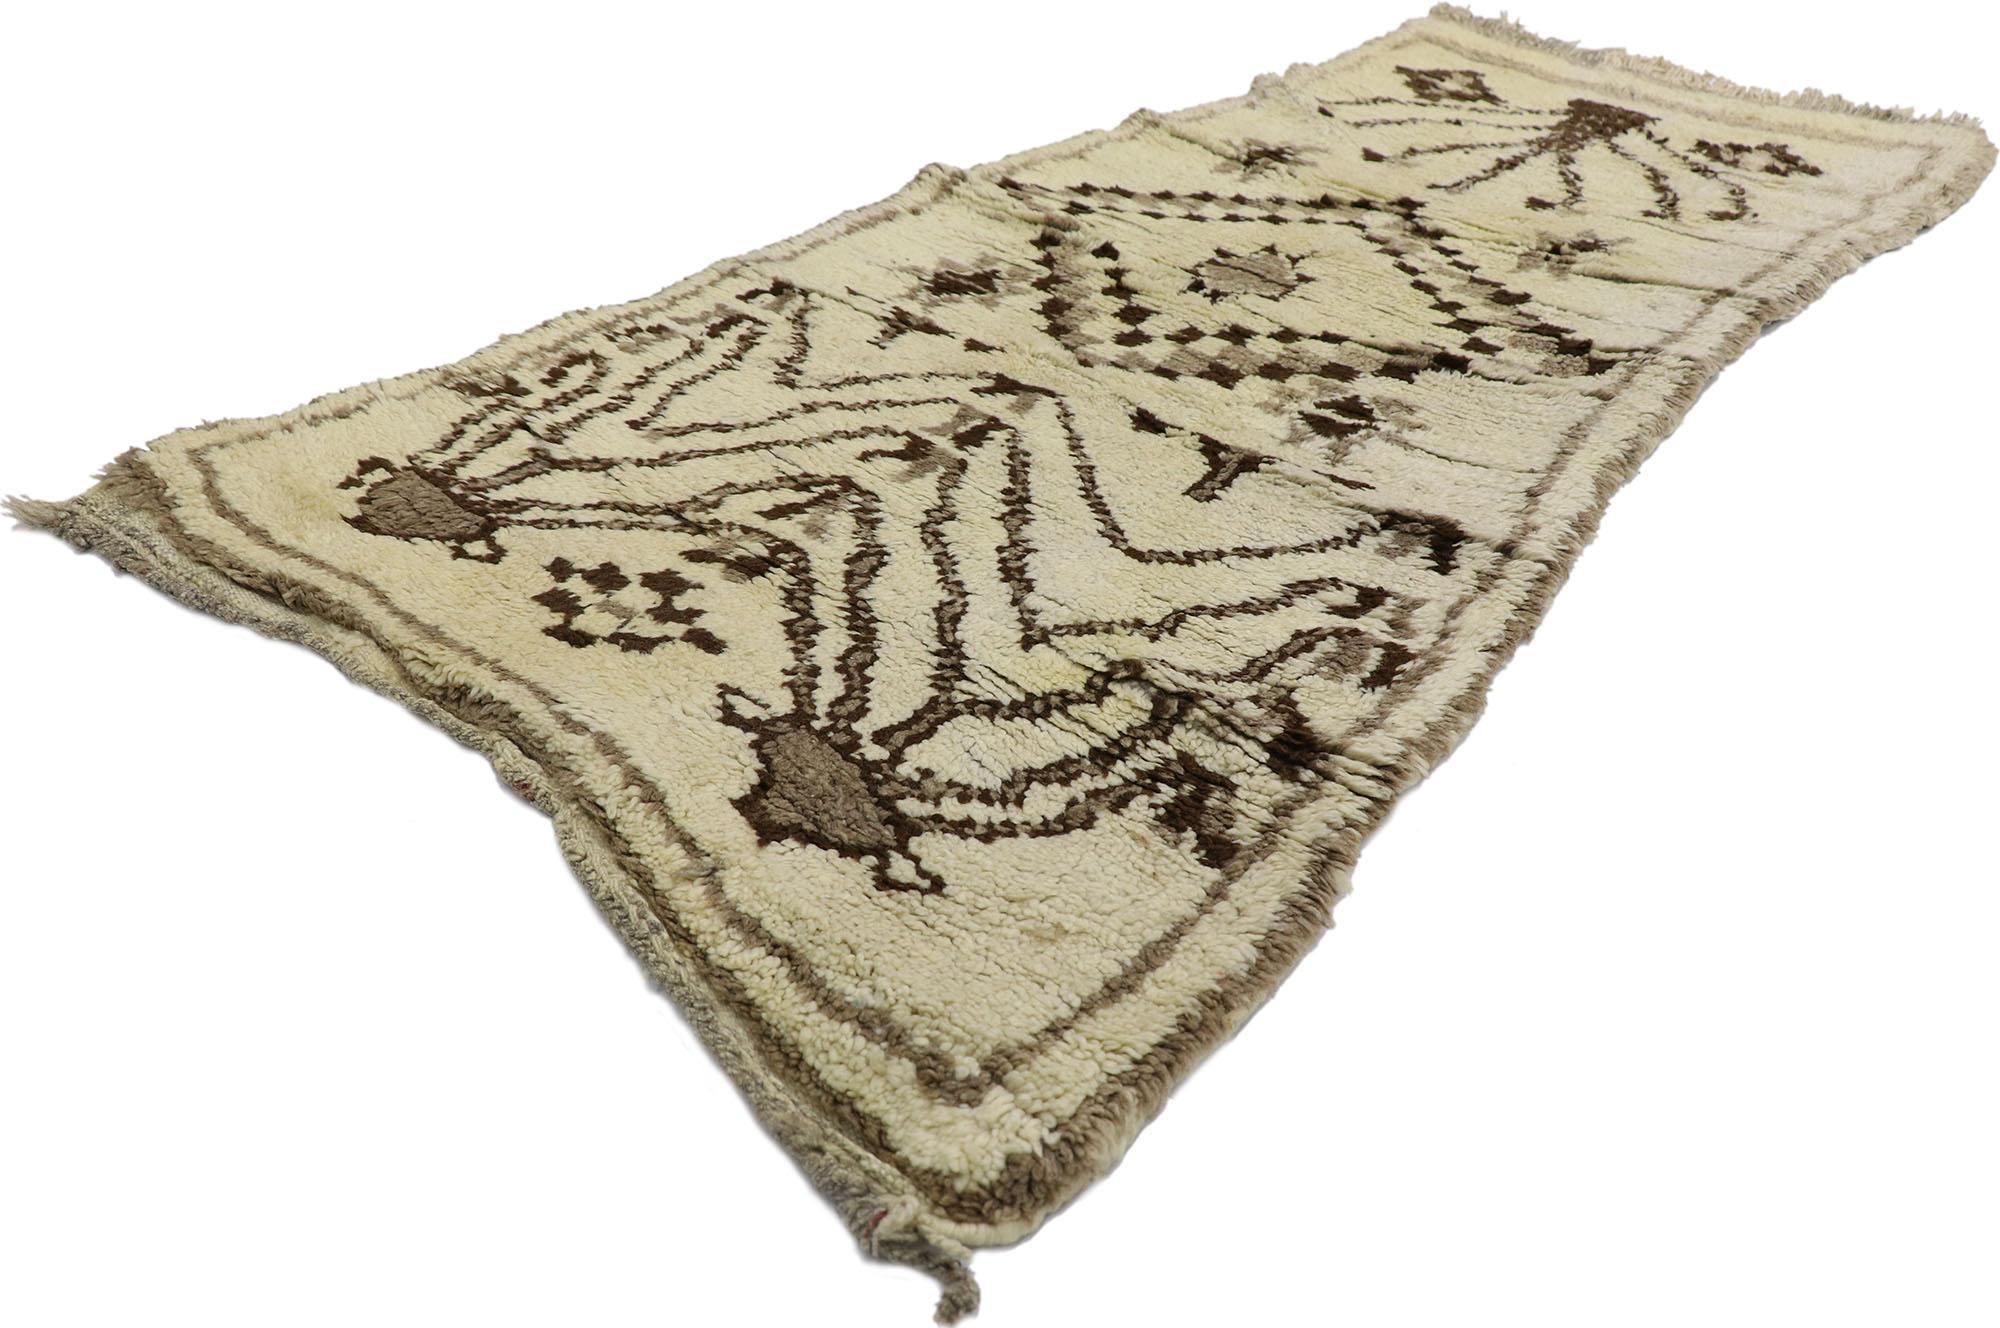 21573 Vintage Berber marokkanischen Azilal Teppich mit Tribal Style 02'07 x 05'06. Dieser handgeknüpfte marokkanische Azilal-Teppich aus Berberwolle im Vintage-Stil besticht durch seine Schlichtheit, seinen Stammes-Stil, seine unglaublichen Details